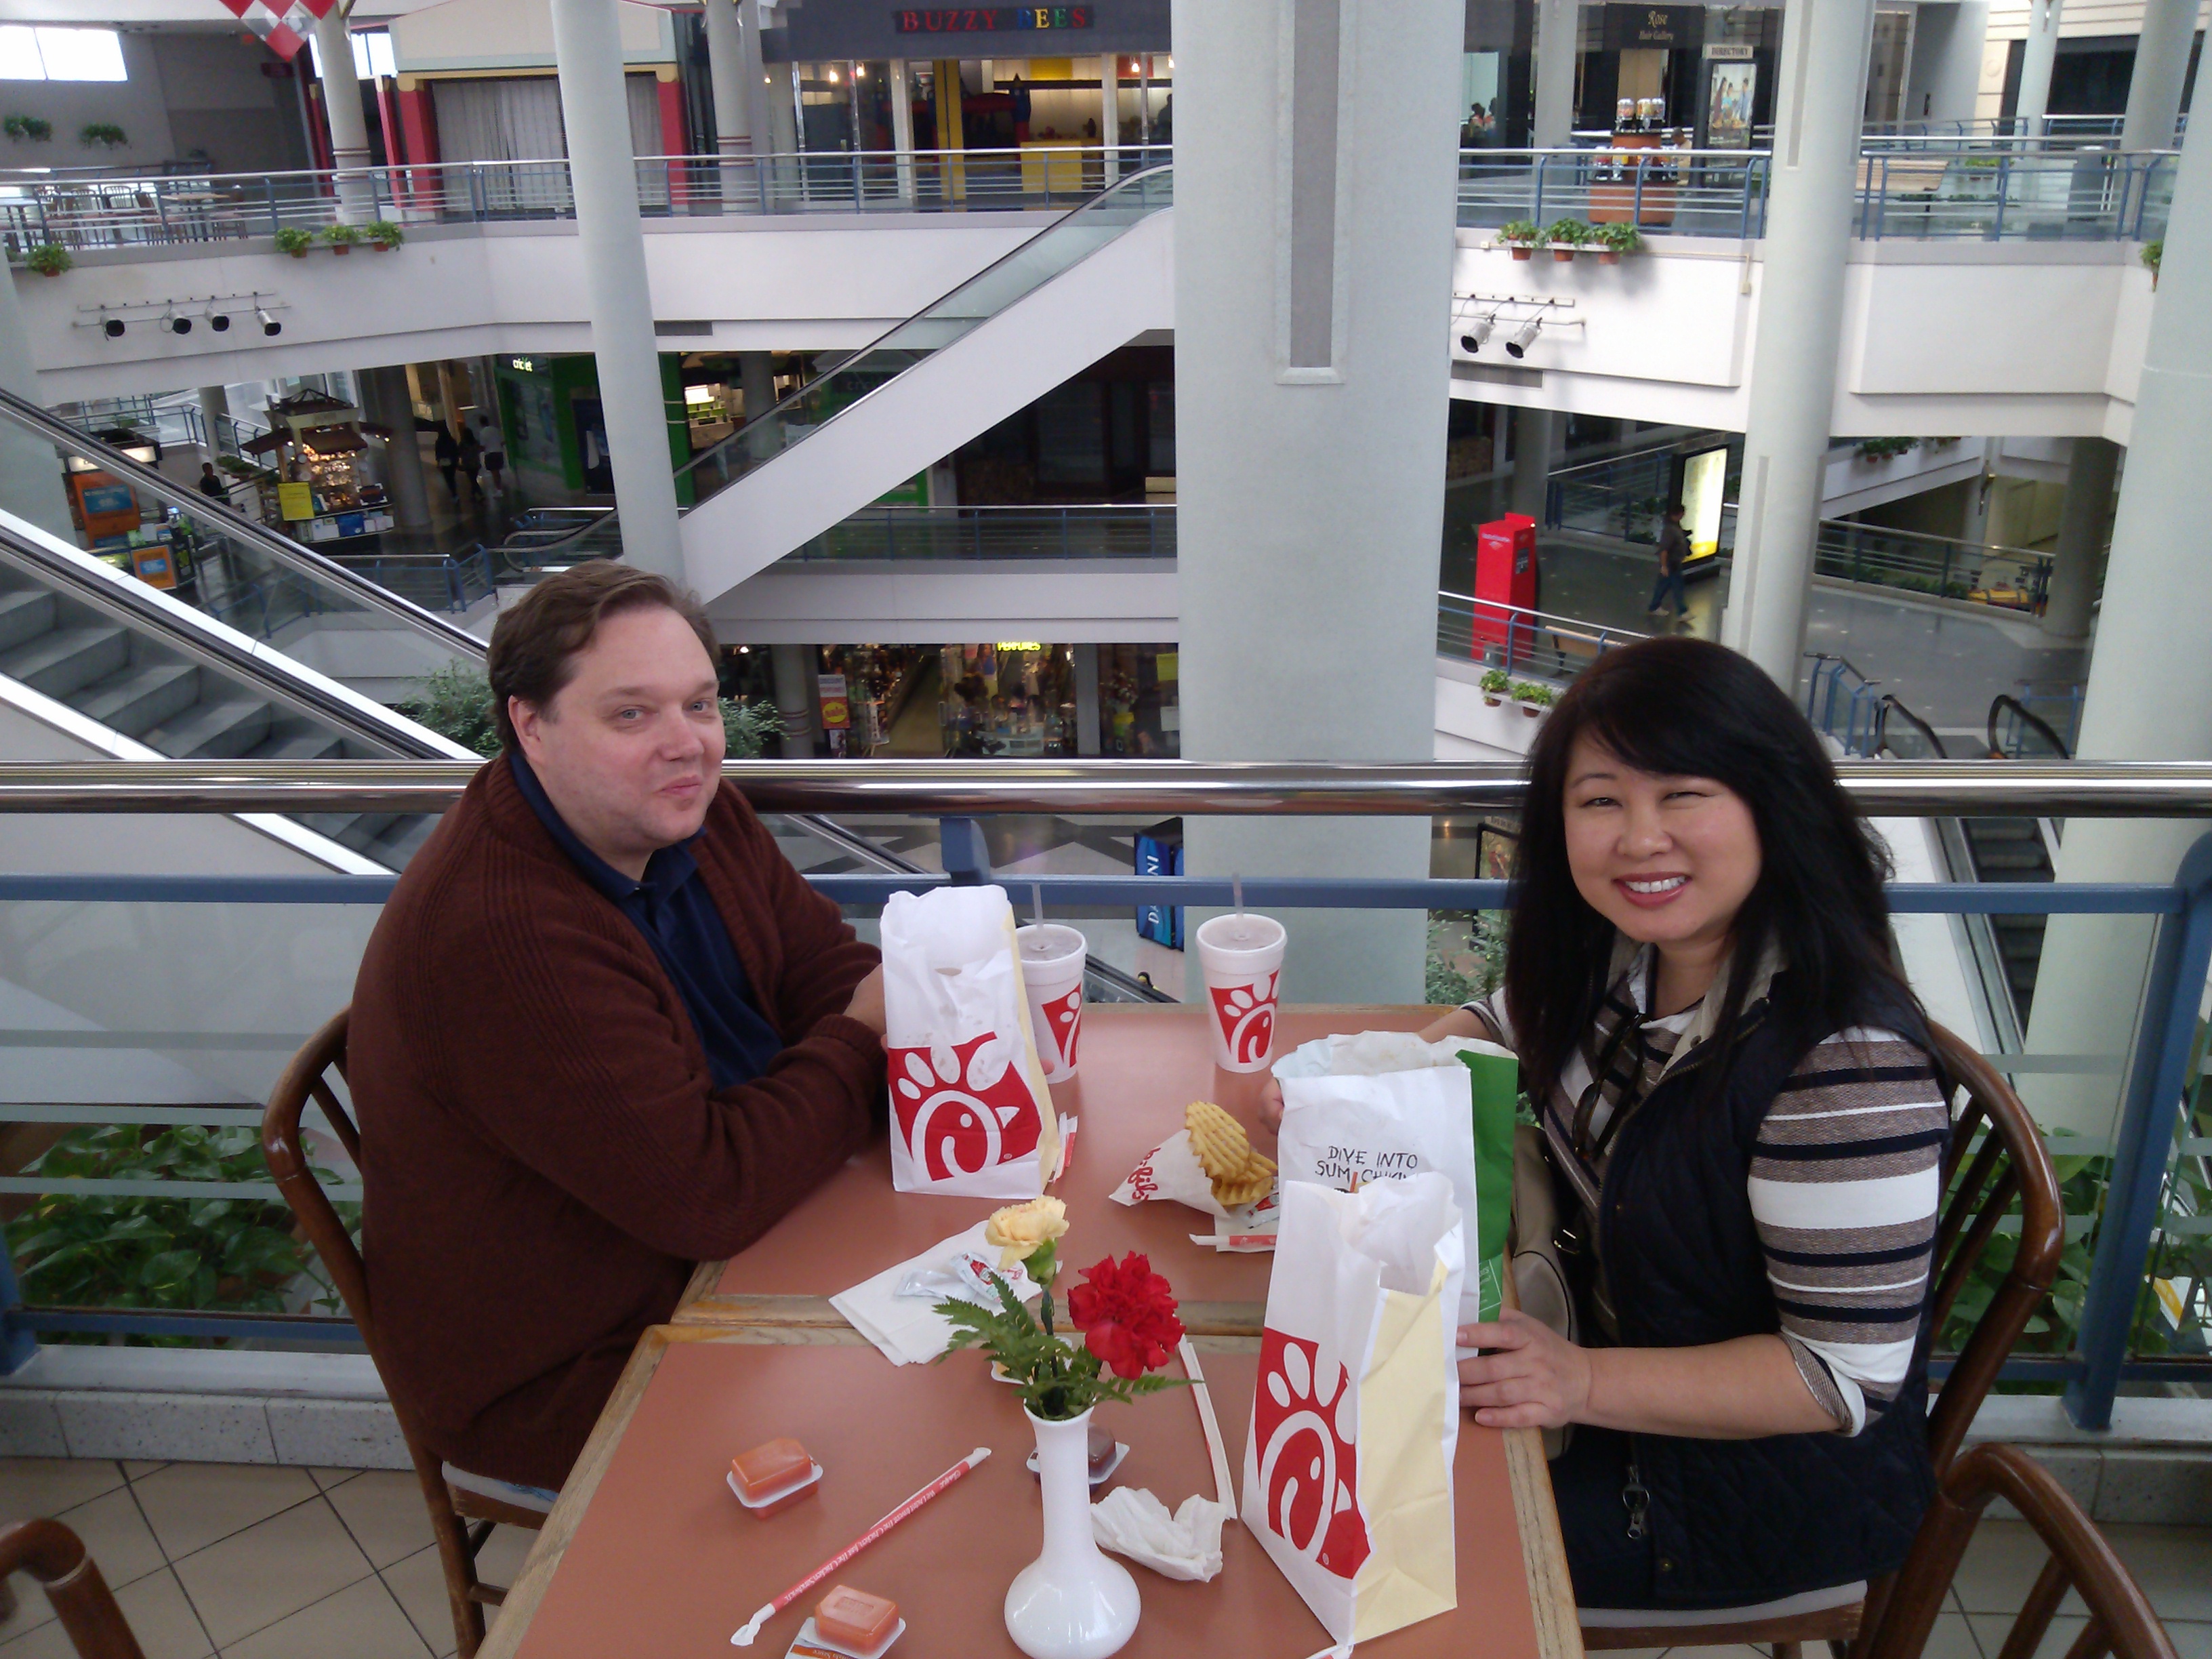 Will and Julie Nesbitt enjoy a meal at Landmark Mall